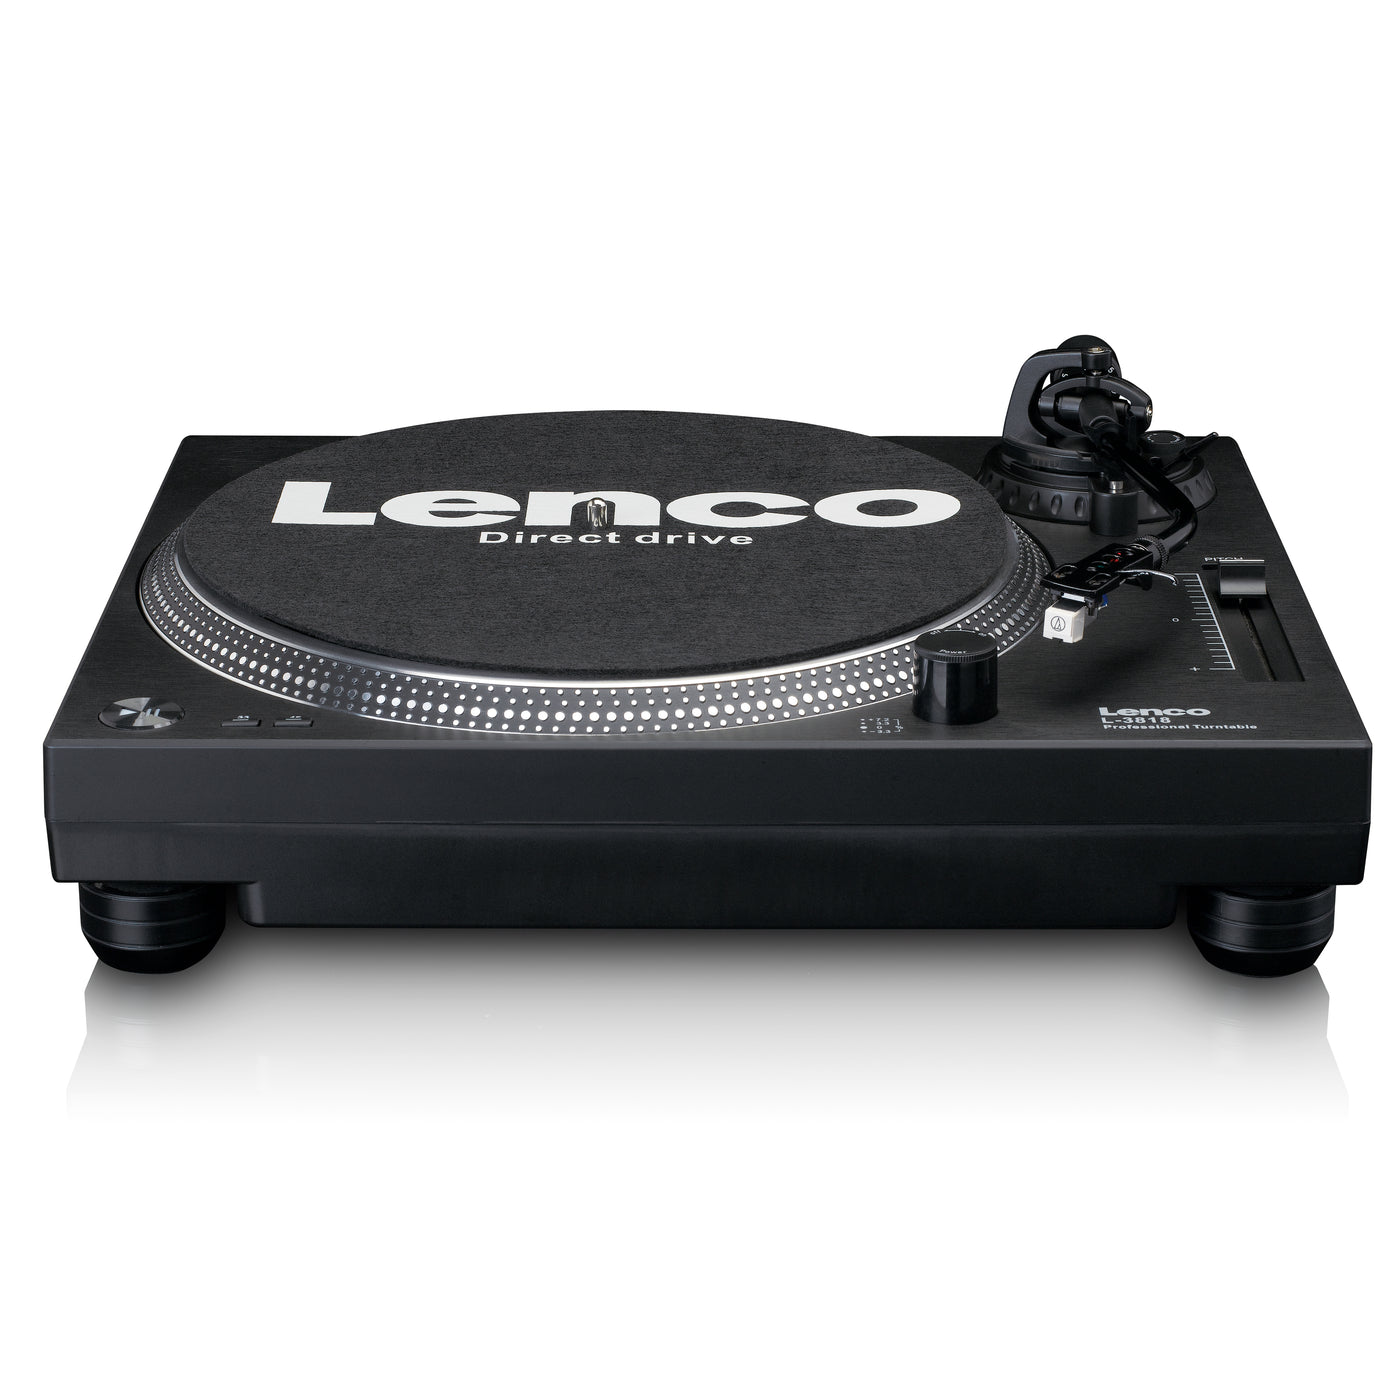 Lenco L-3818 Plattenspieler mit Direktantrieb - DJ Plattenspieler - Pitch Control - 33 und 45 U/min - Stereo Vorverstärker - USB - RCA Line-Out - Digitalisierung via PC - Schwarz